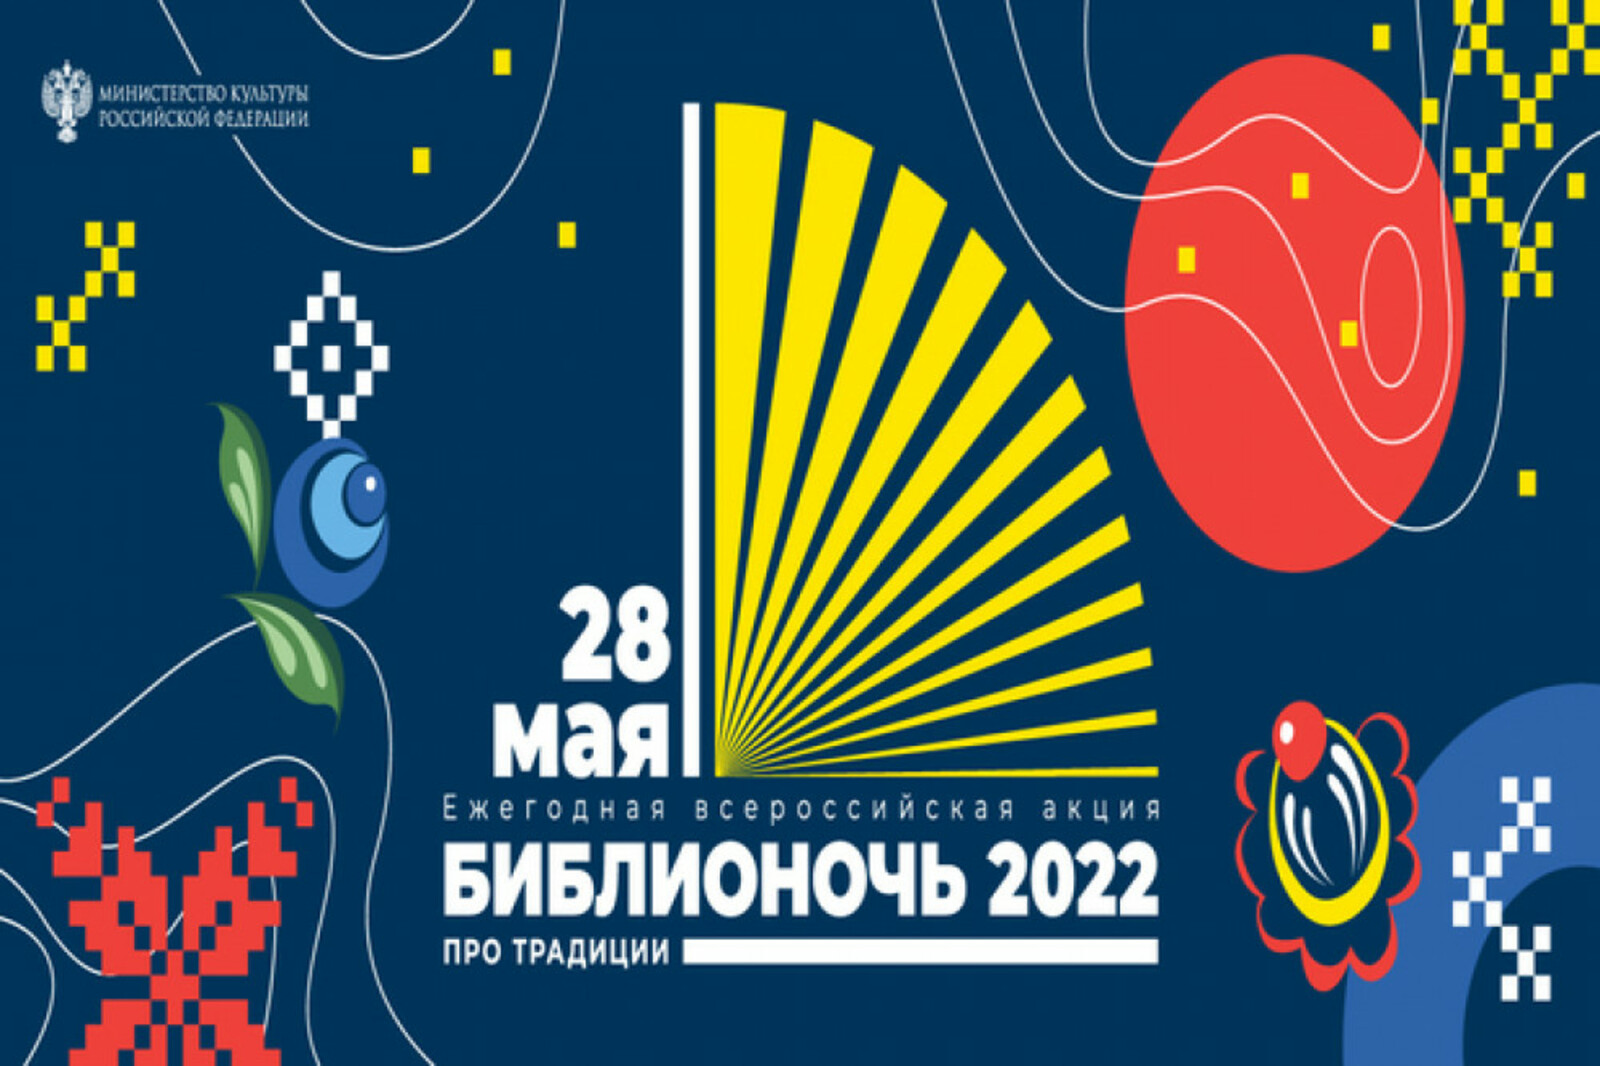 В Башкортостане пройдет одно из самых масштабных культурных событий года - акция «Библионочь-2022»